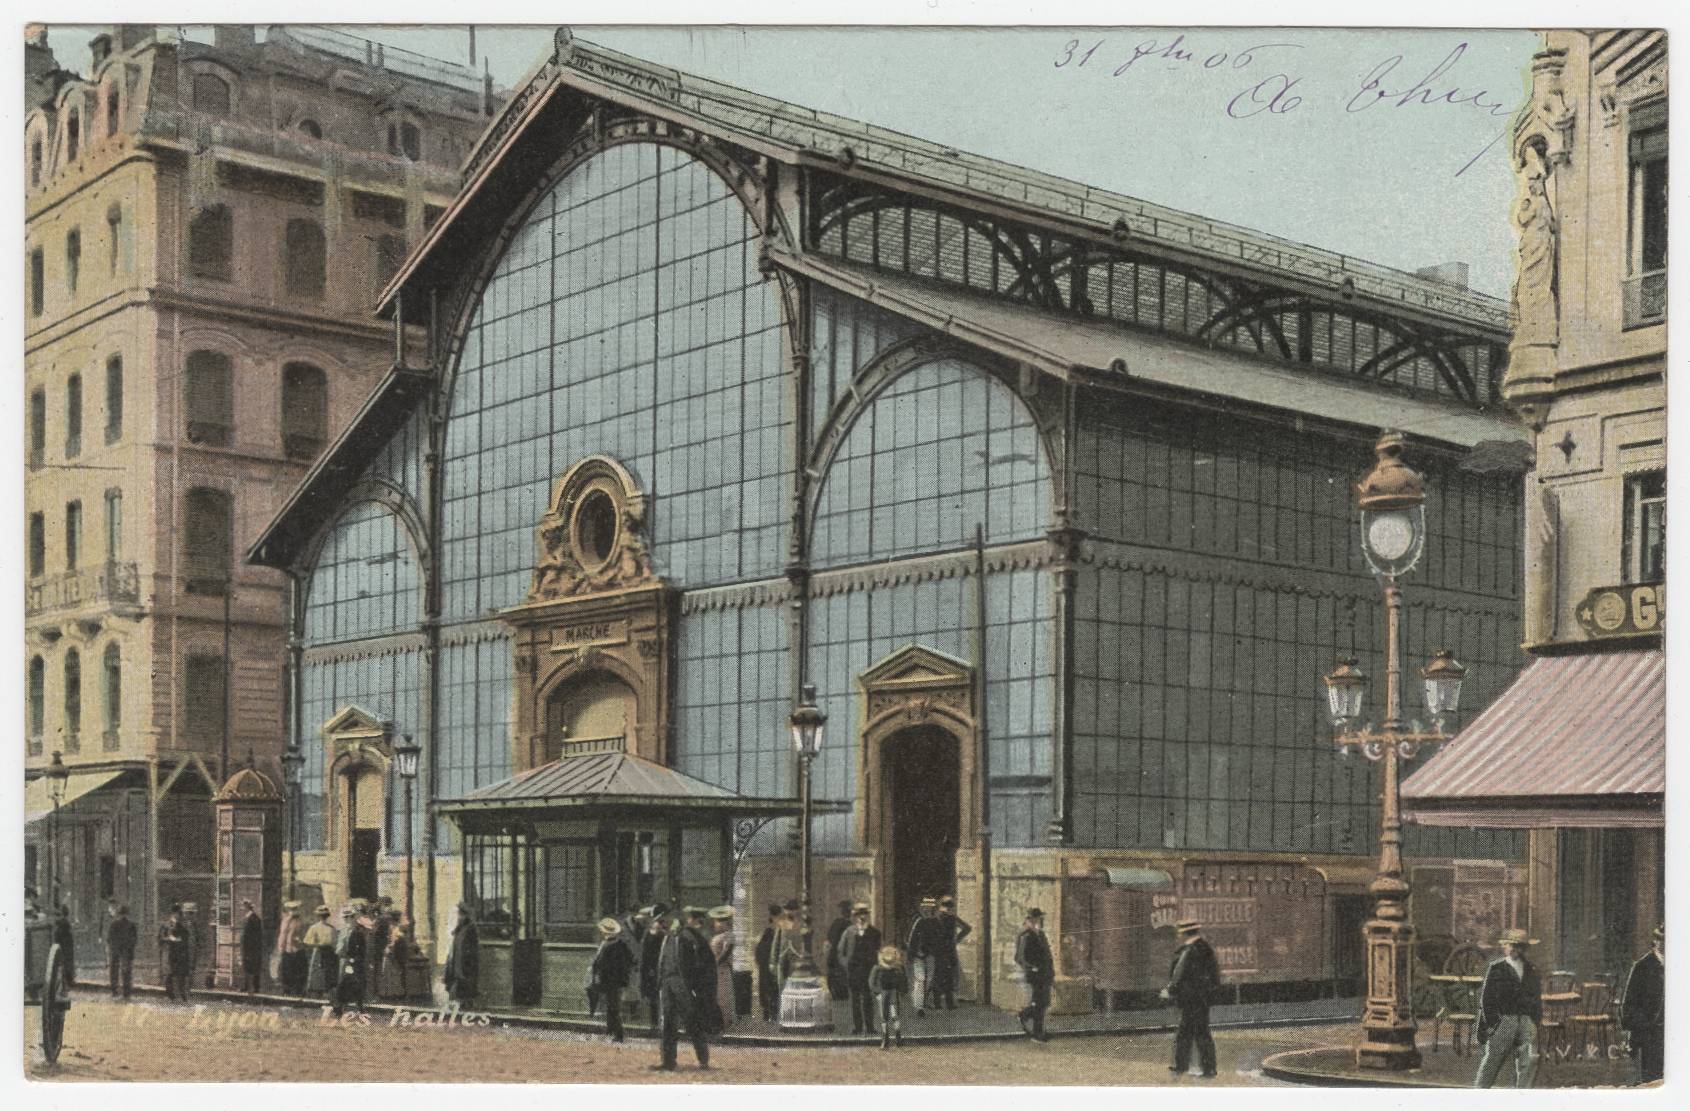 Lyon - Les Halles : carte postale colorisée (vers 1906, cote : 4FI/1388)